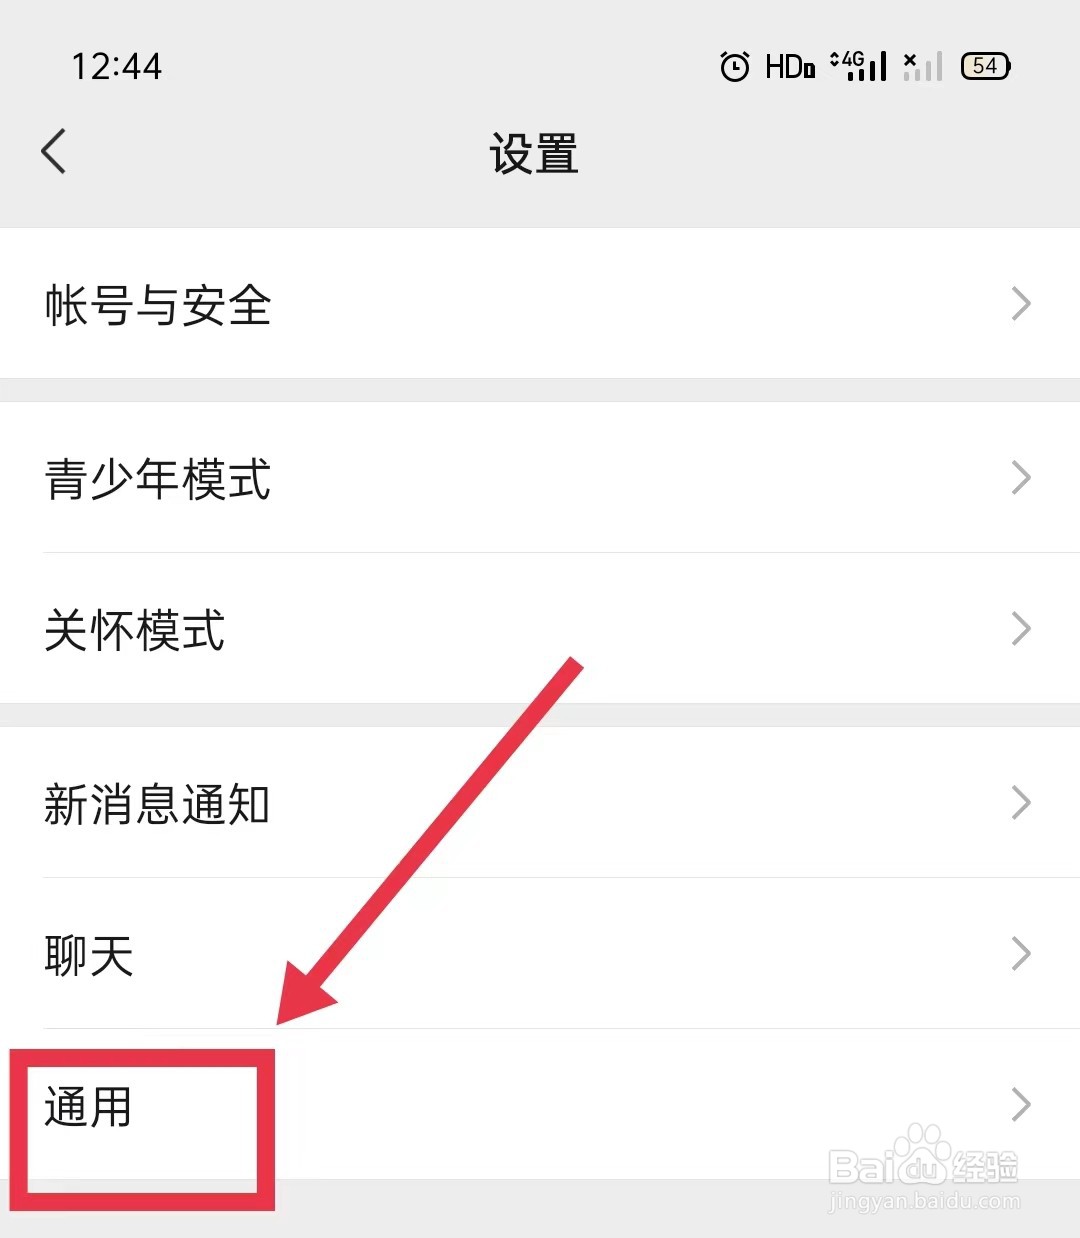 微信的QQ邮箱提醒怎样查看邮件